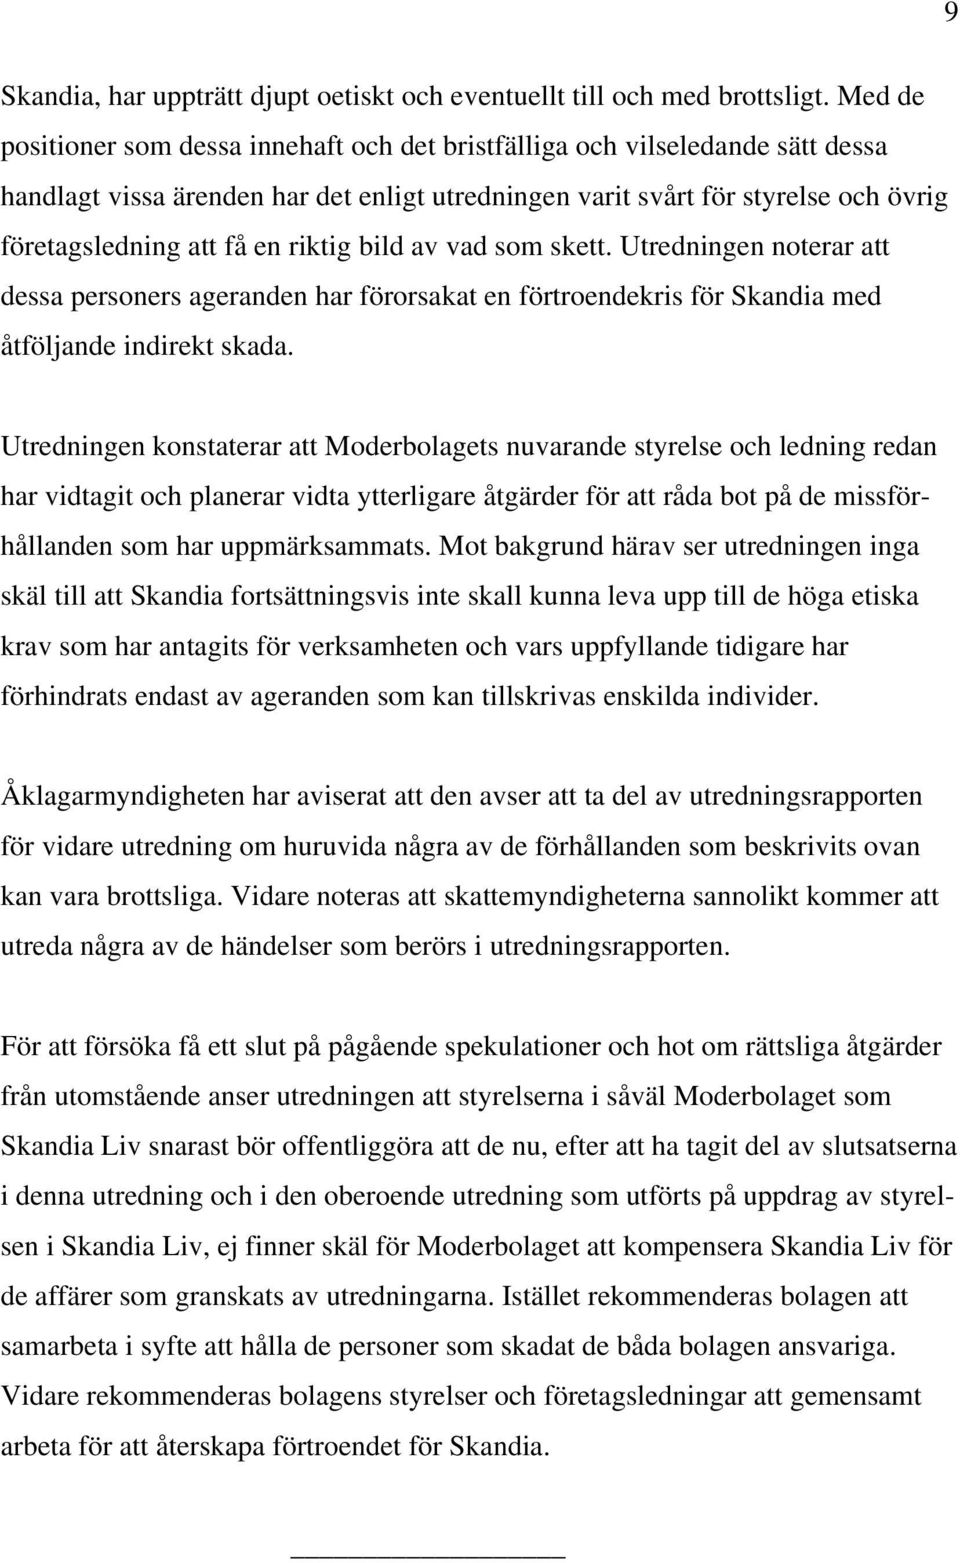 riktig bild av vad som skett. Utredningen noterar att dessa personers ageranden har förorsakat en förtroendekris för Skandia med åtföljande indirekt skada.